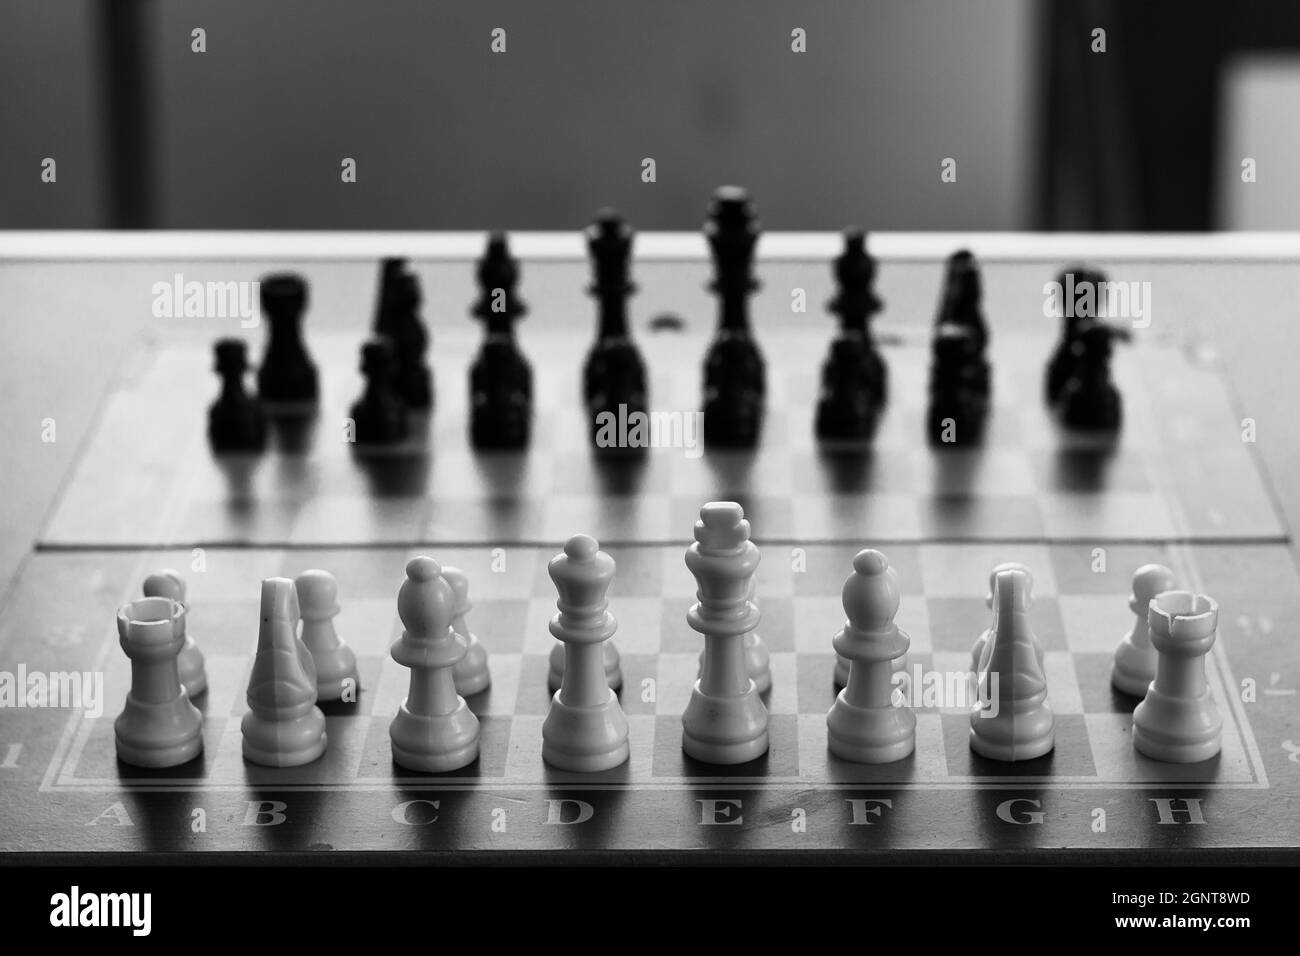 Jeu d'échecs prêt à être joué en noir et blanc. Stratégies, intelligence, lumière et concepts de l'ombre Banque D'Images